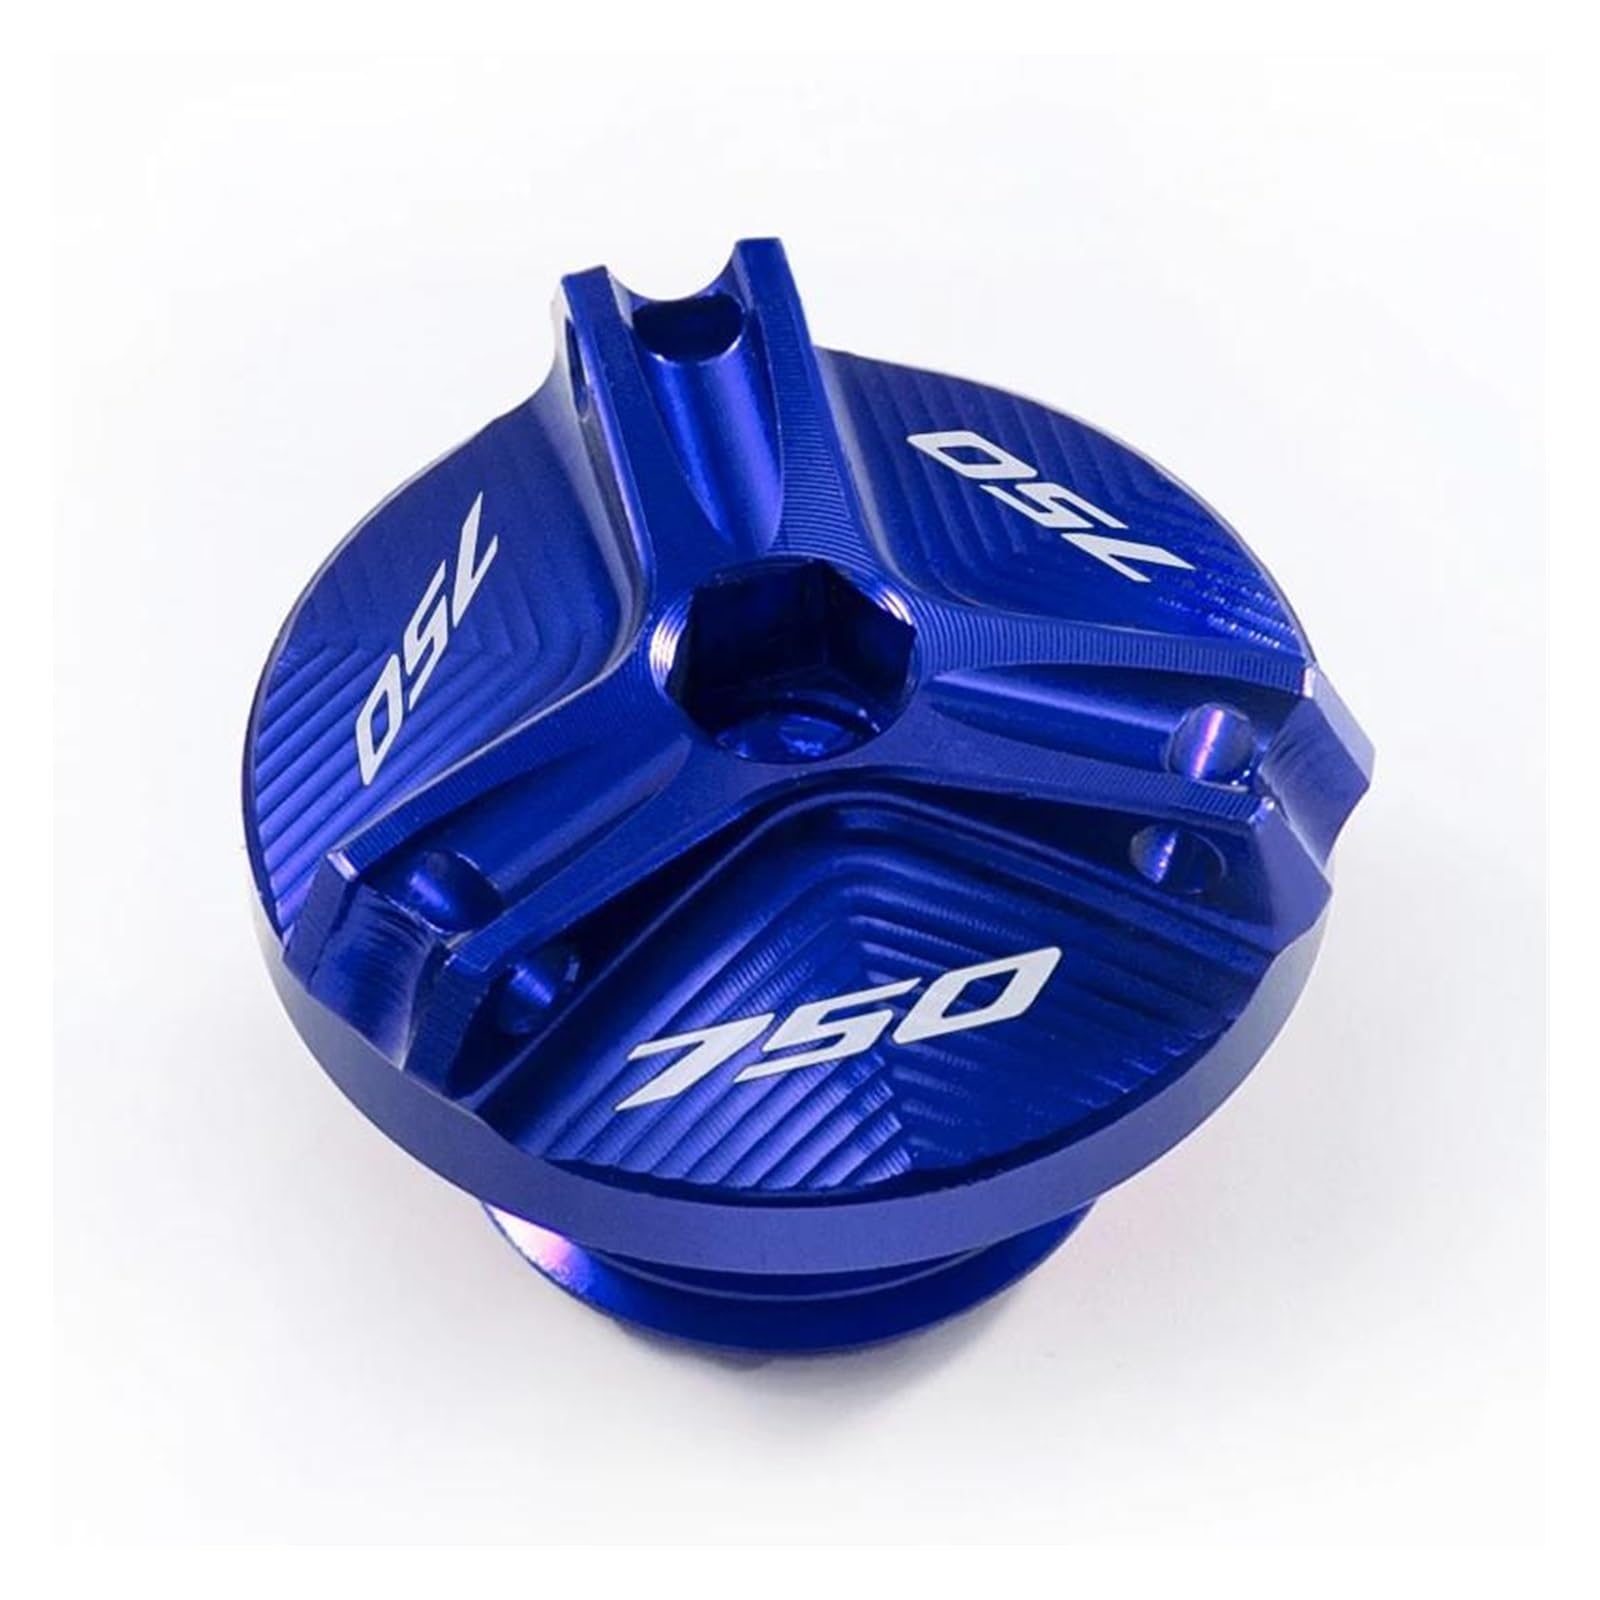 Öleinfüllschutzkappe Für HO&NDA Forza 750 FORZA 750 2020 2021 2022 Motorrad Motoröl Kappe Bolzen Tankdeckel Schutz Zubehör(Blue) von QIBOZNG